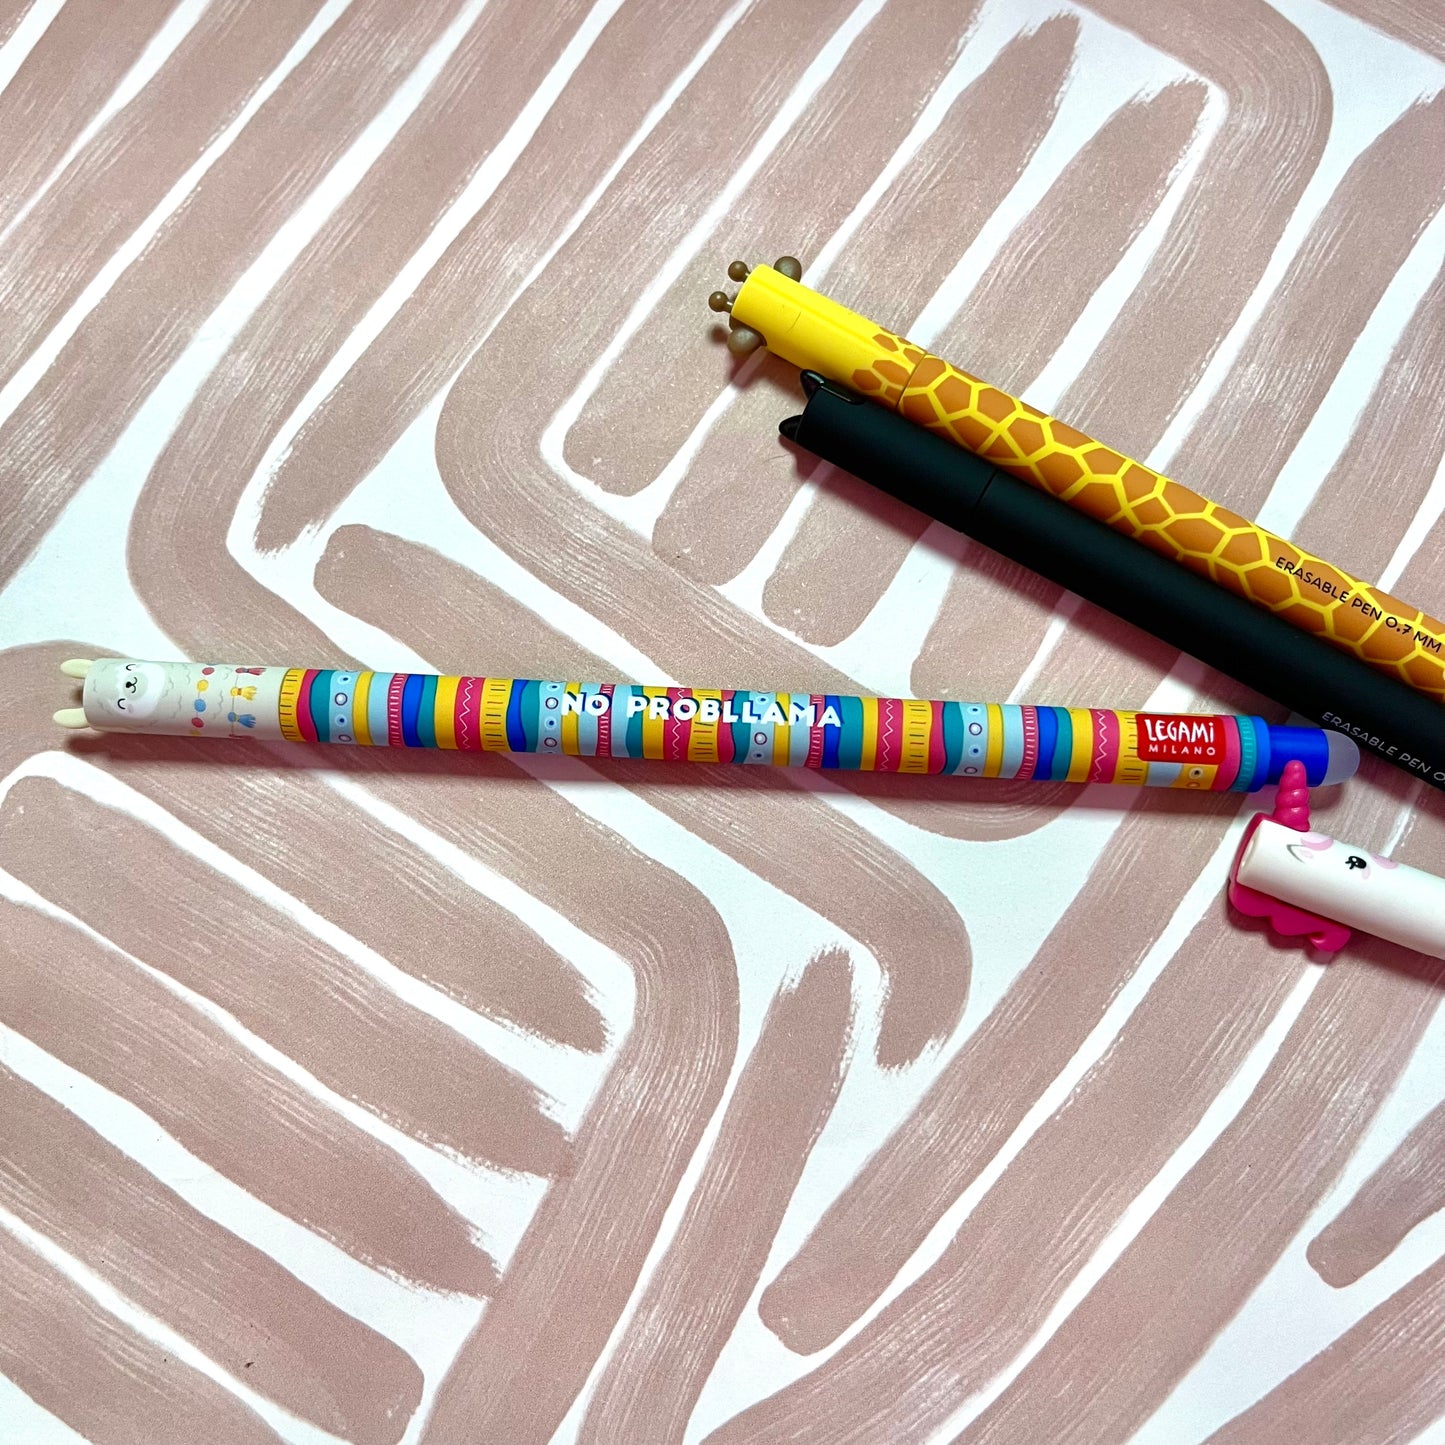 Erasable Pen